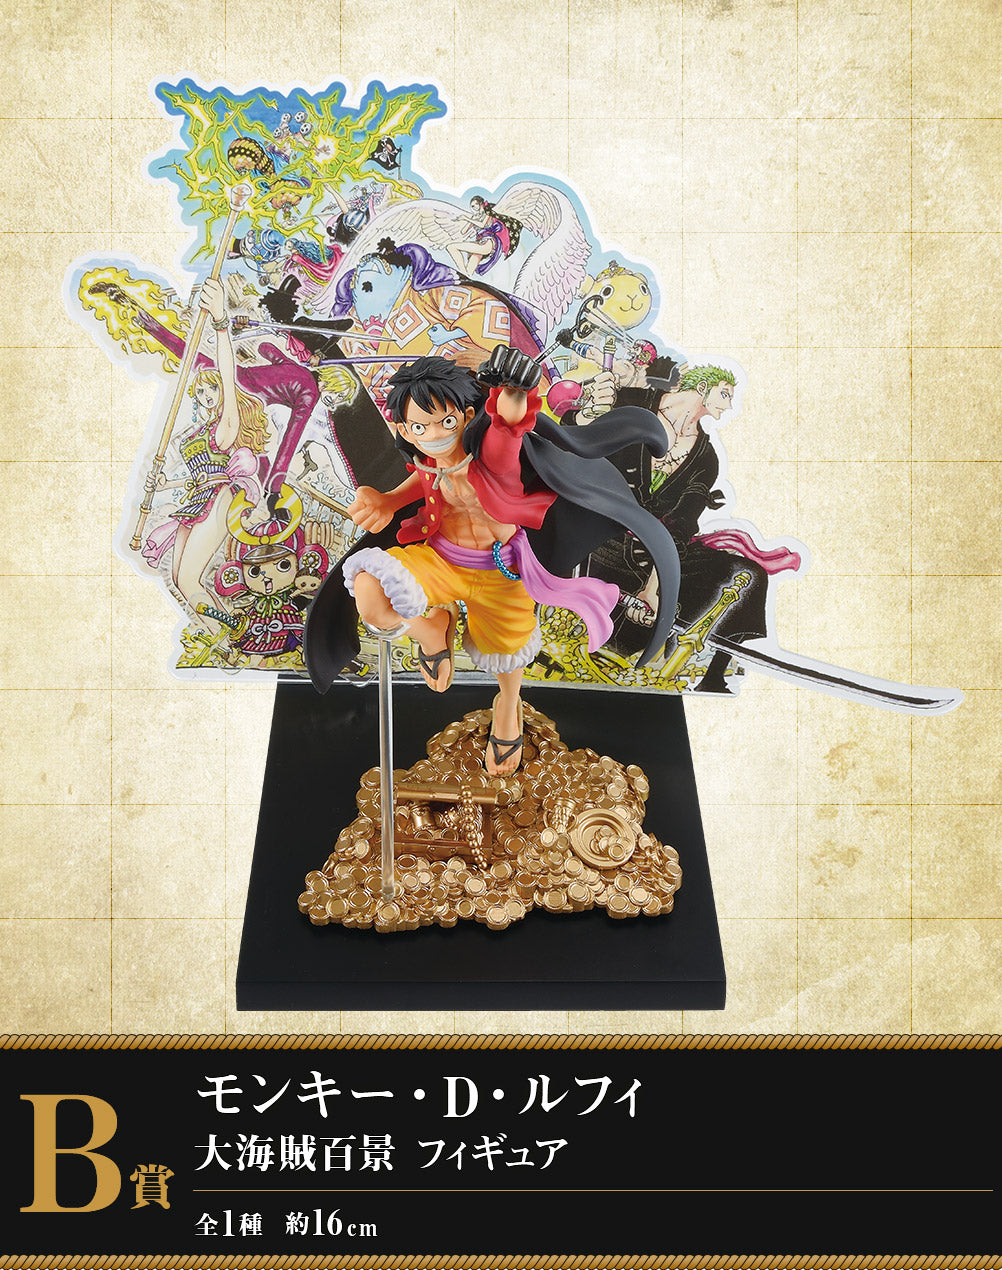 Pre-Order Ichiban Kuji One Piece WT100 Lotto Completo 7 Figure + Pannello